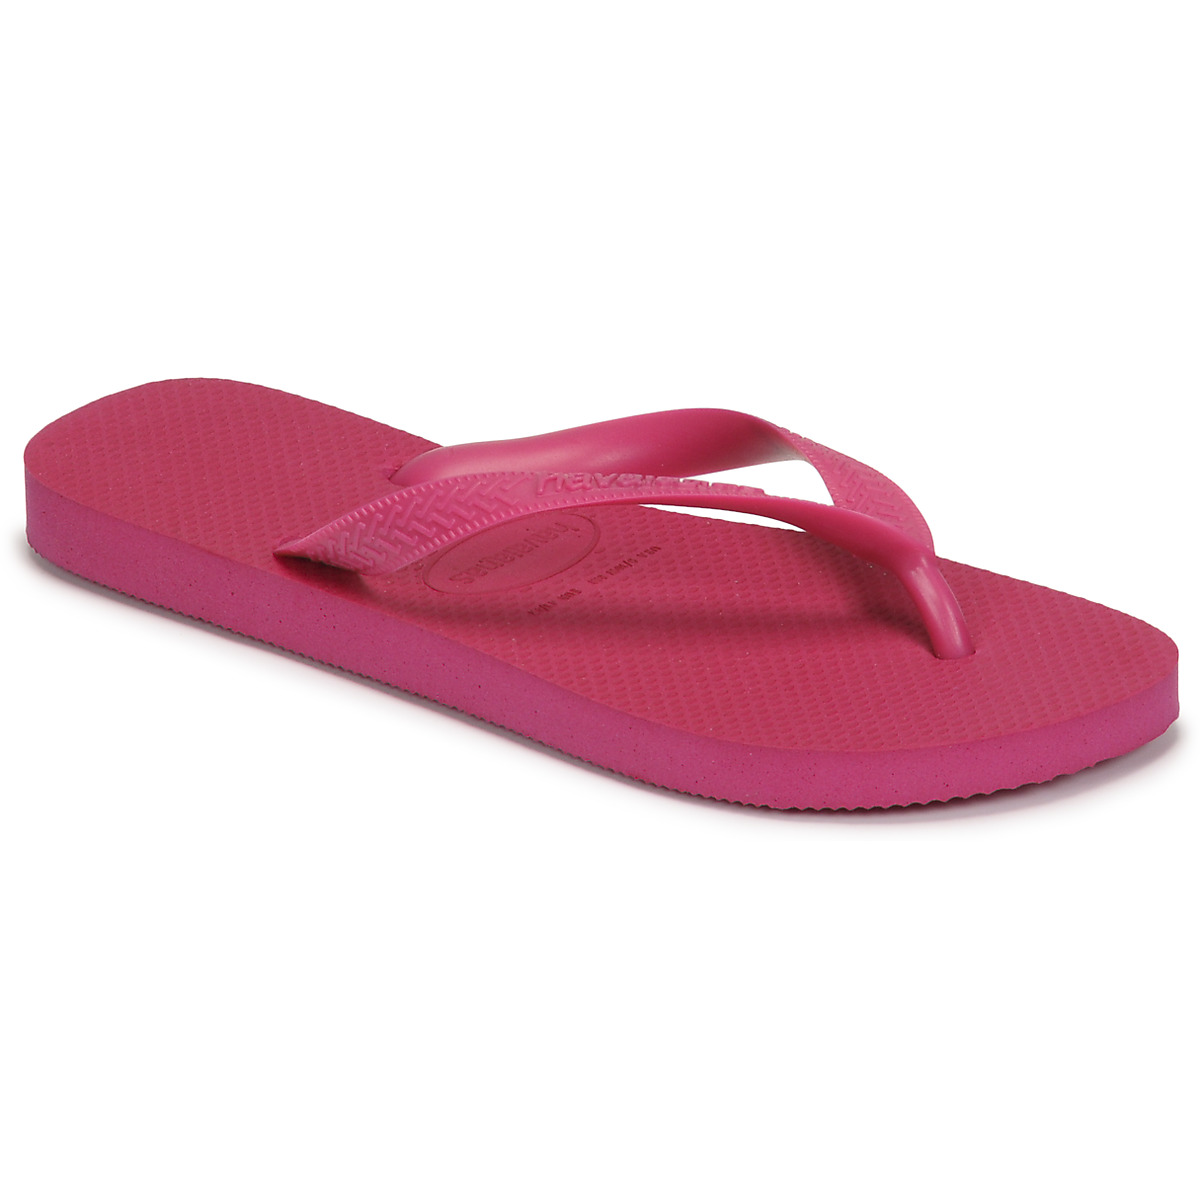 Παπούτσια Γυναίκα Σαγιονάρες Havaianas TOP Ροζ